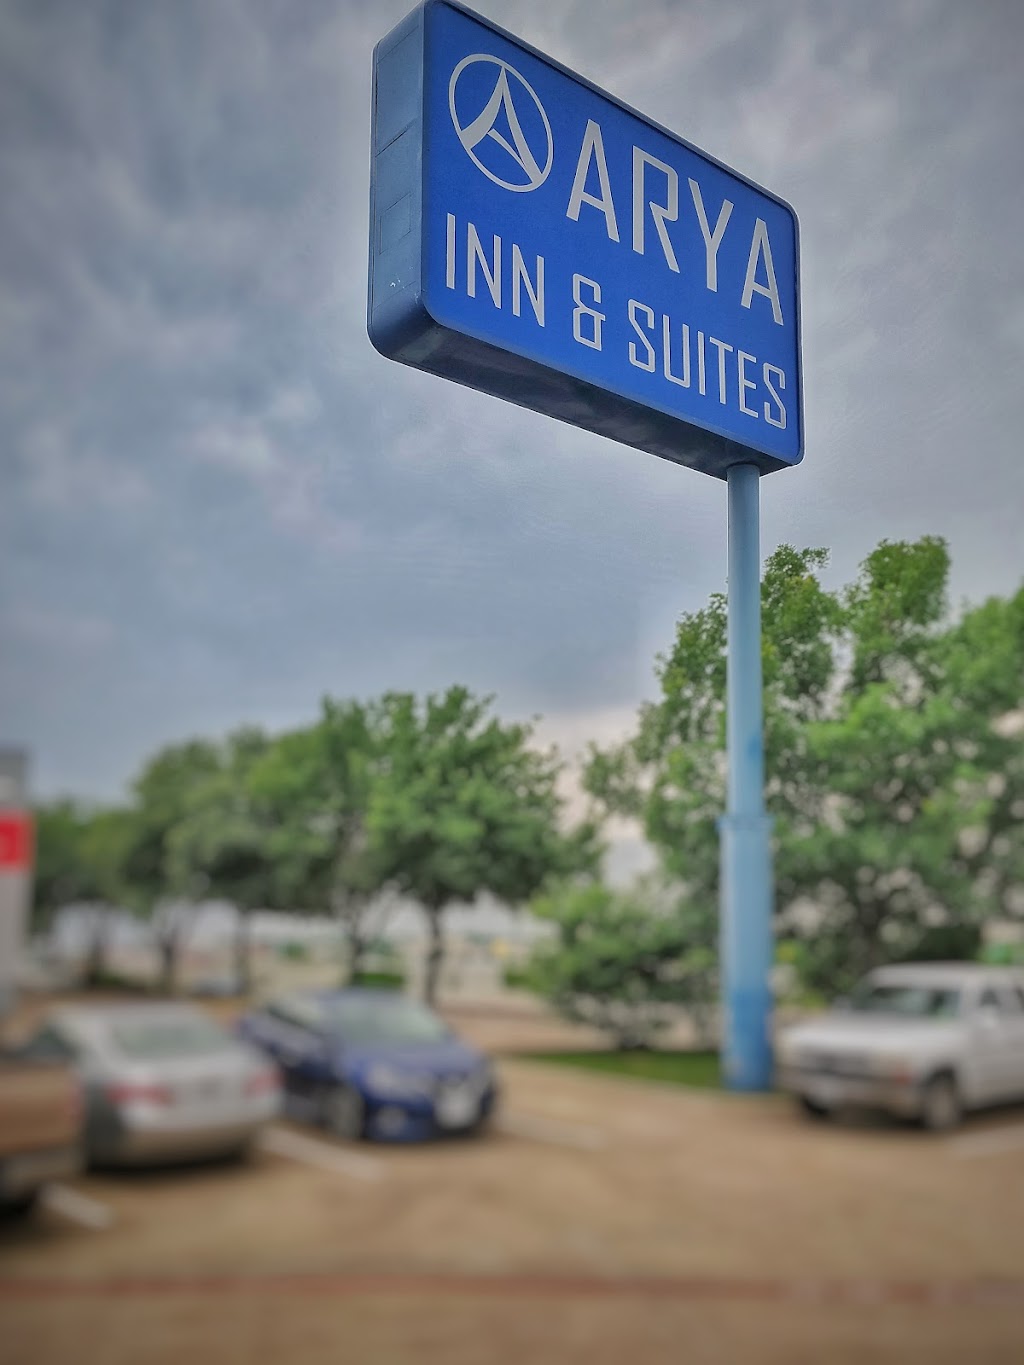 Arya Inn & Suites | 3232 W Irving Blvd, Irving, TX 75061, USA | Phone: (972) 986-7800